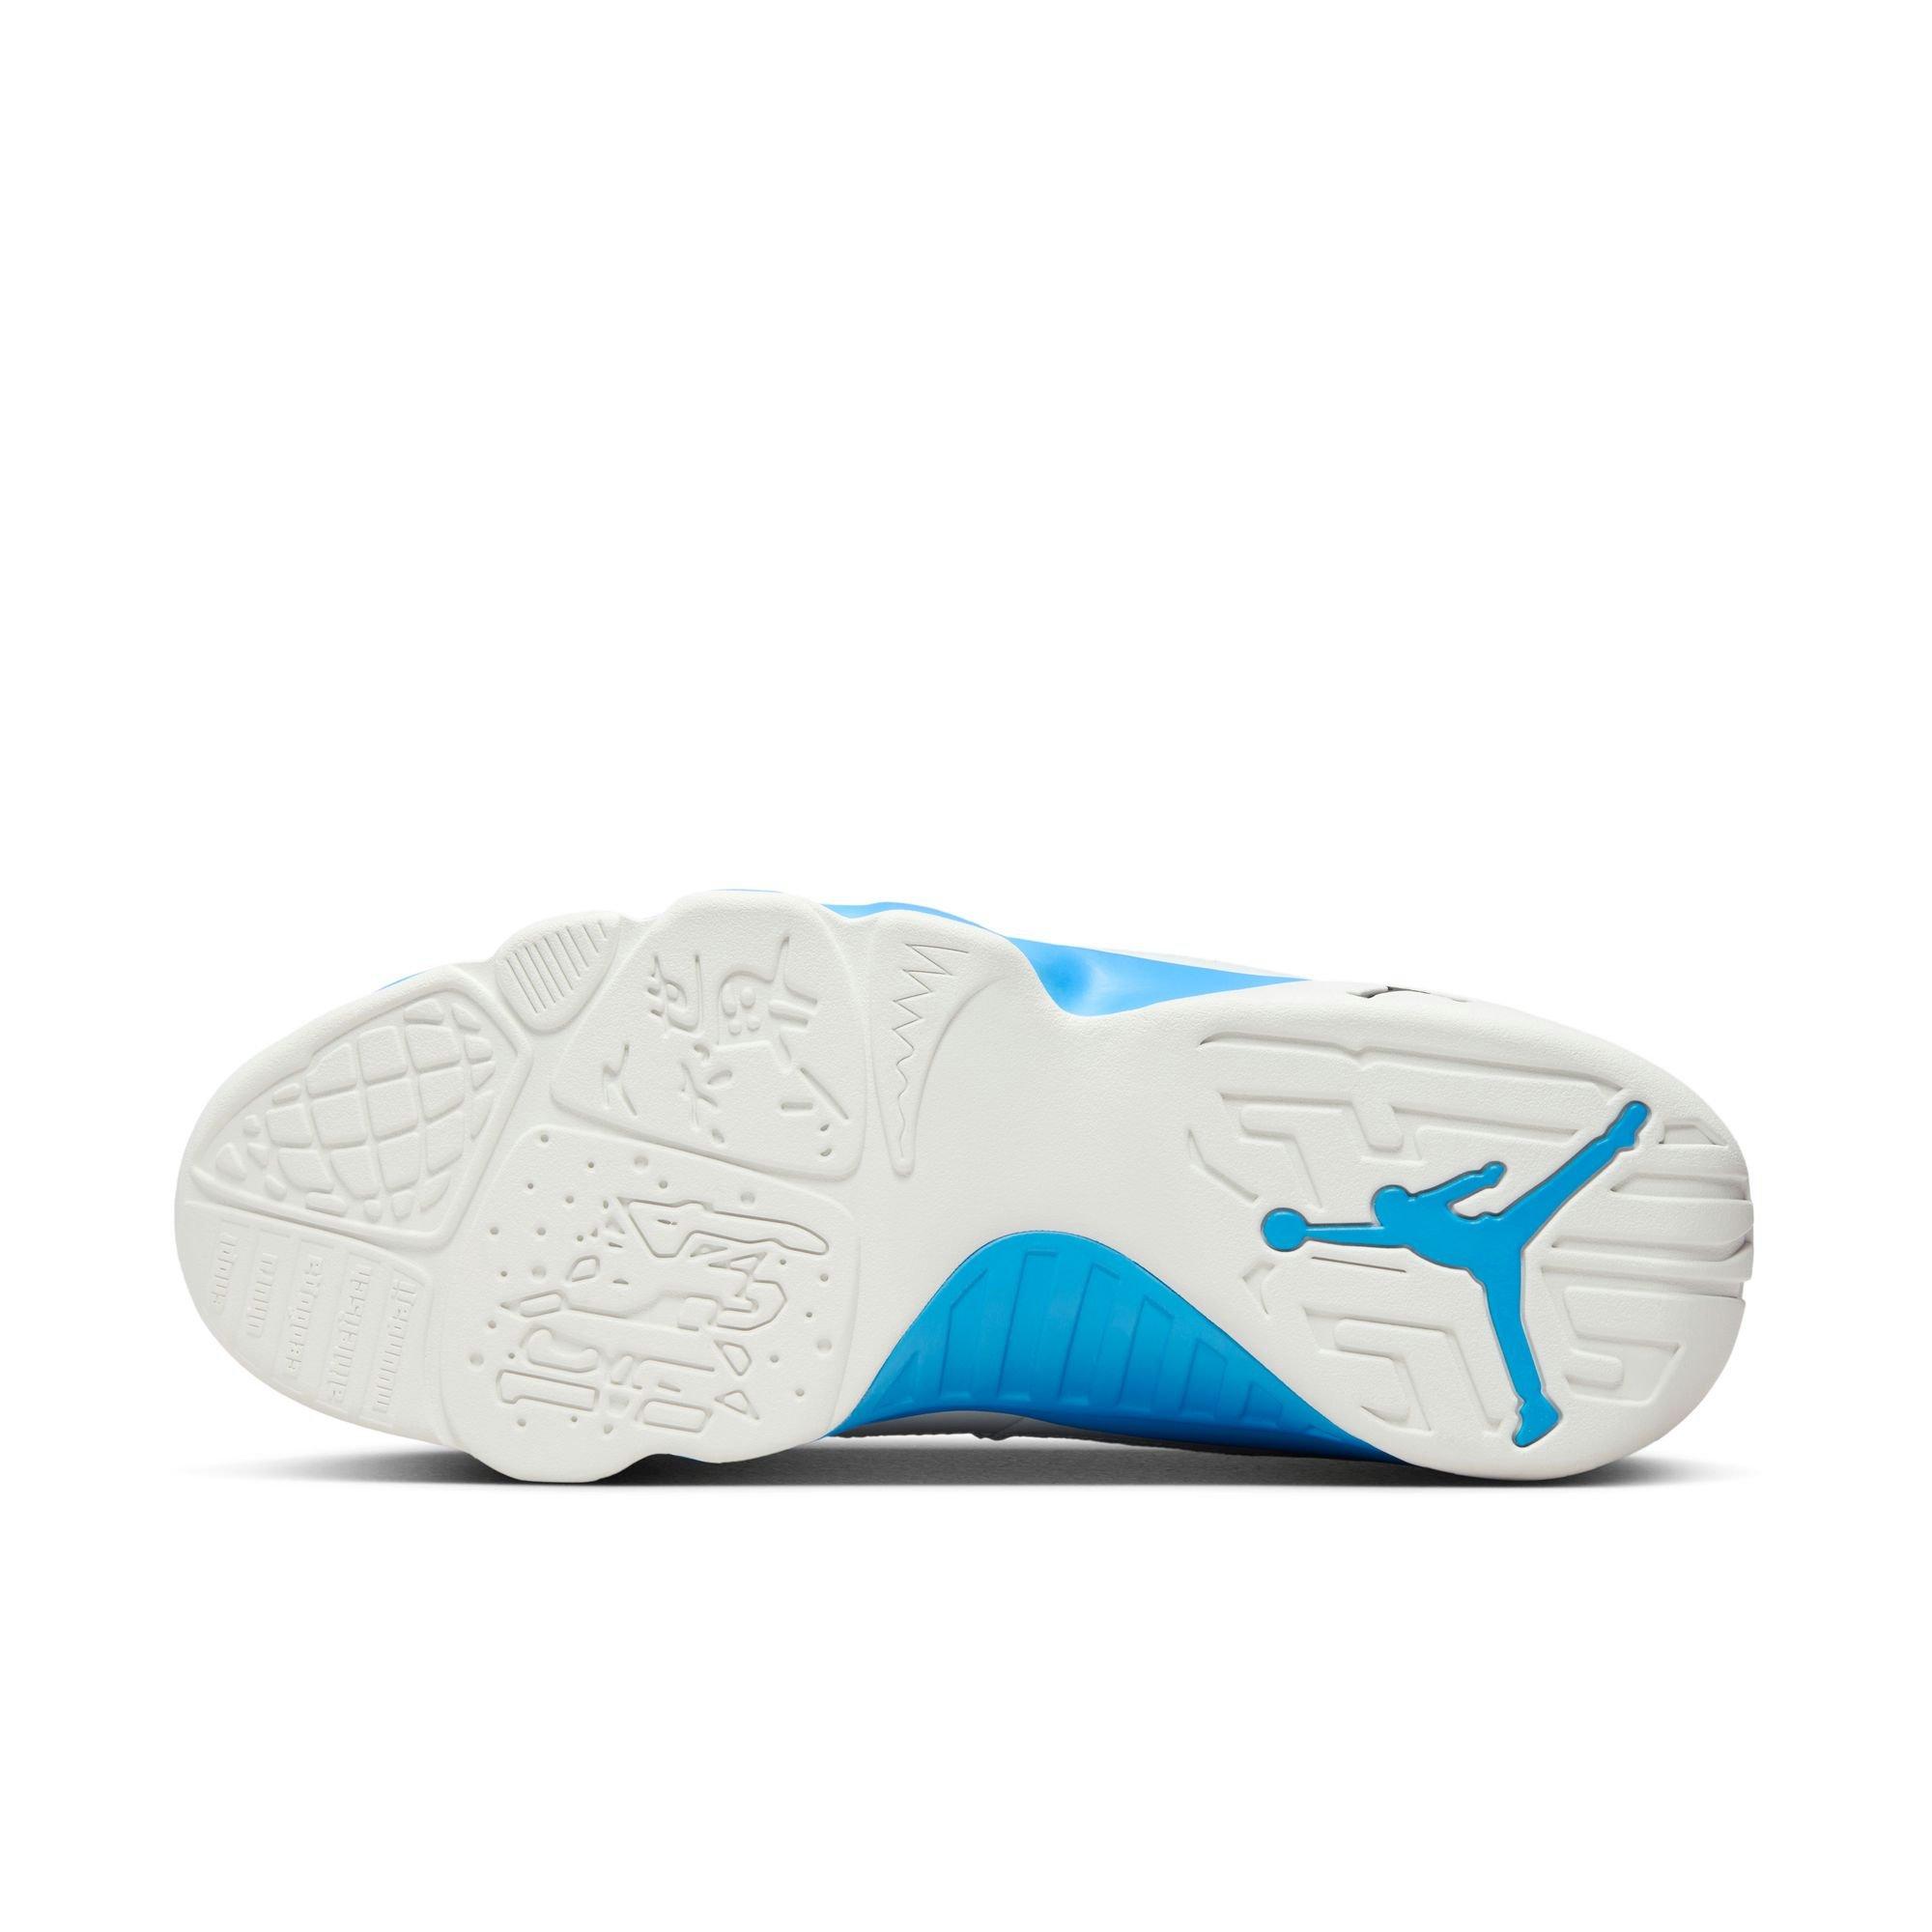 Air Jordan 9 Retro Shoes - Low